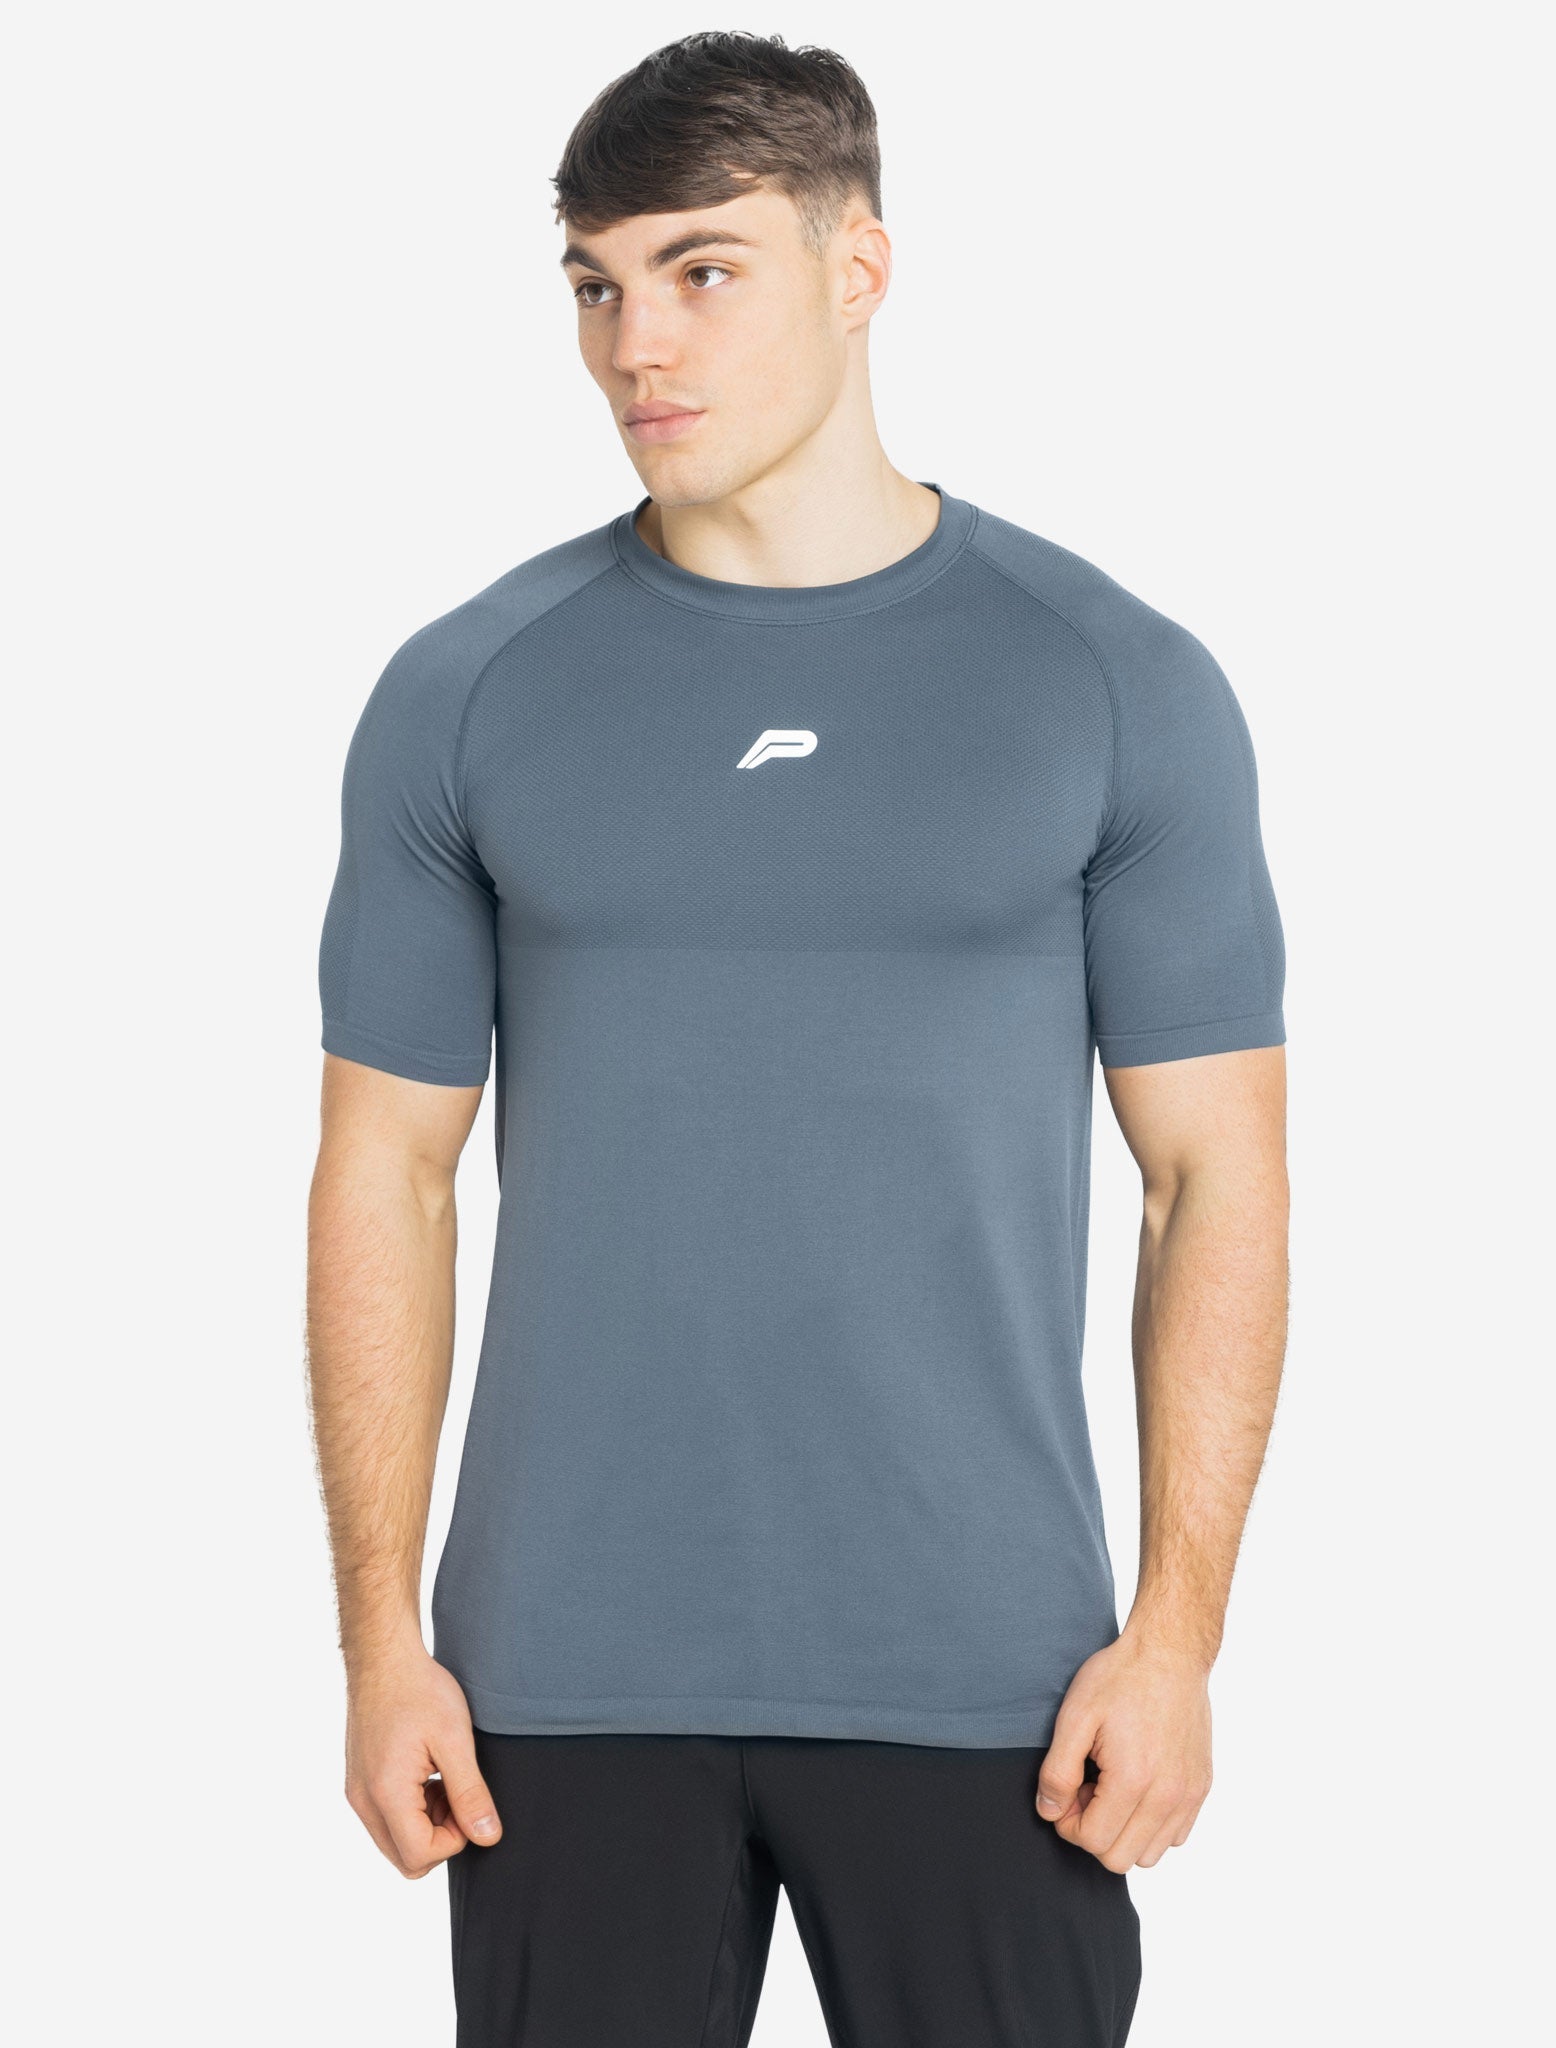 Seamless T-shirt / Deep Blue Pursue Fitness 1